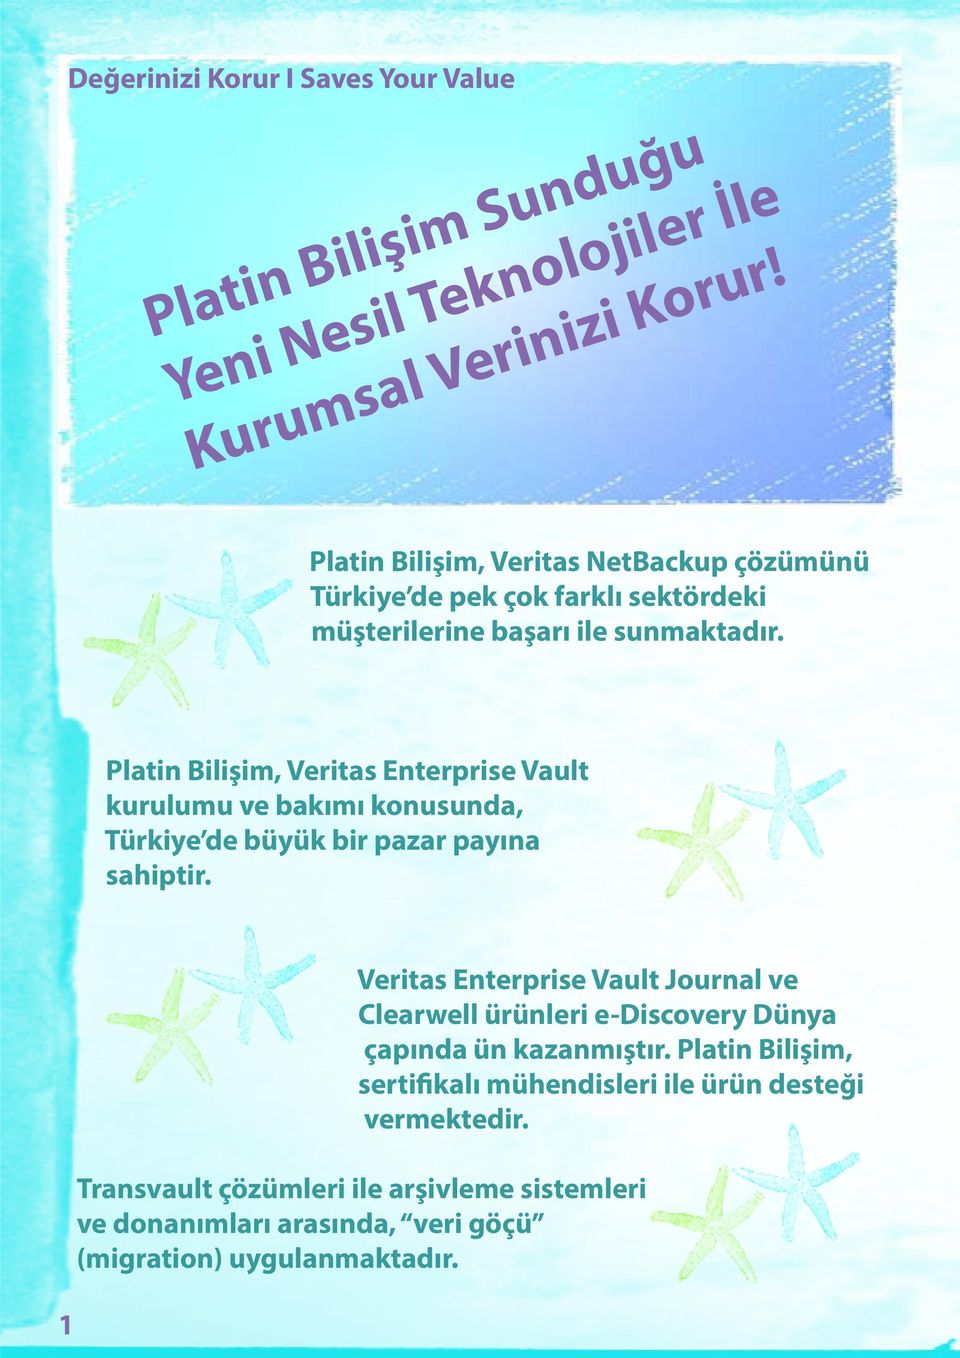 Platin Bilişim, Veritas Enterprise Vault kurulumu ve bakımı konusunda, Türkiye de büyük bir pazar payına sahiptir.